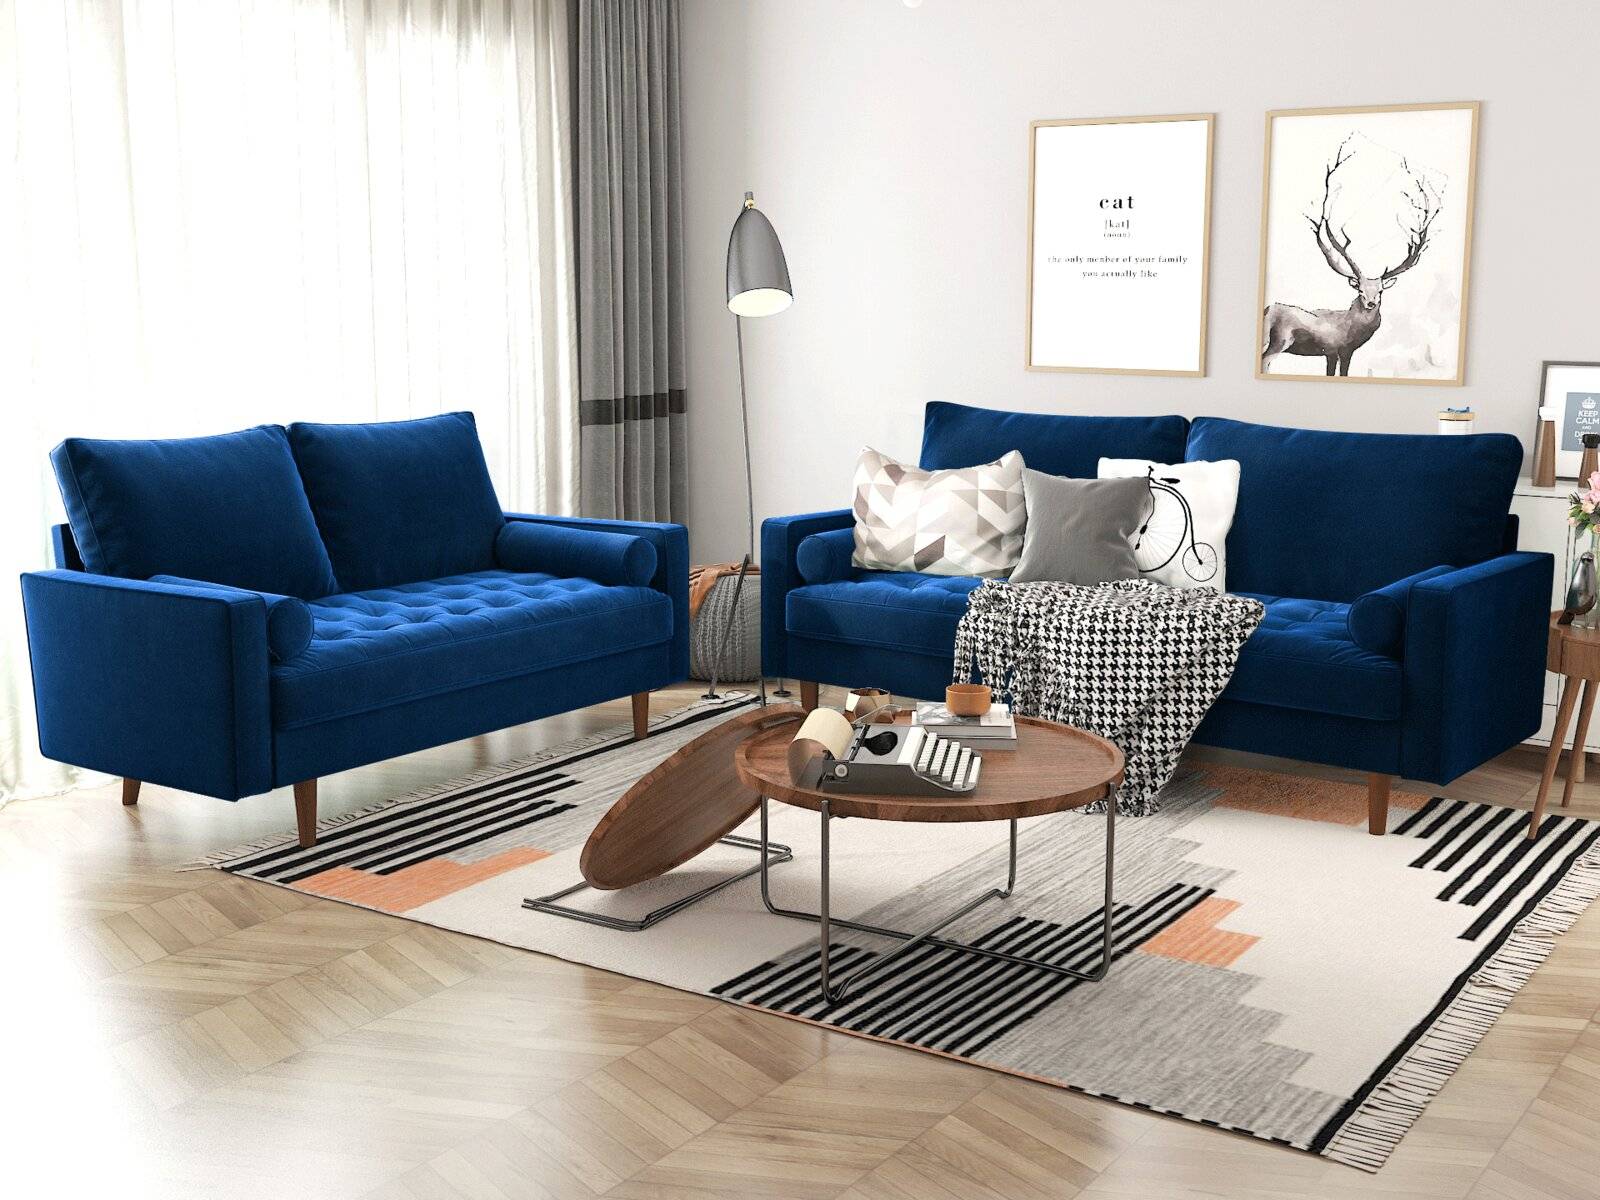 blue velvet sofa inspiration for a luxurious living room | decoist